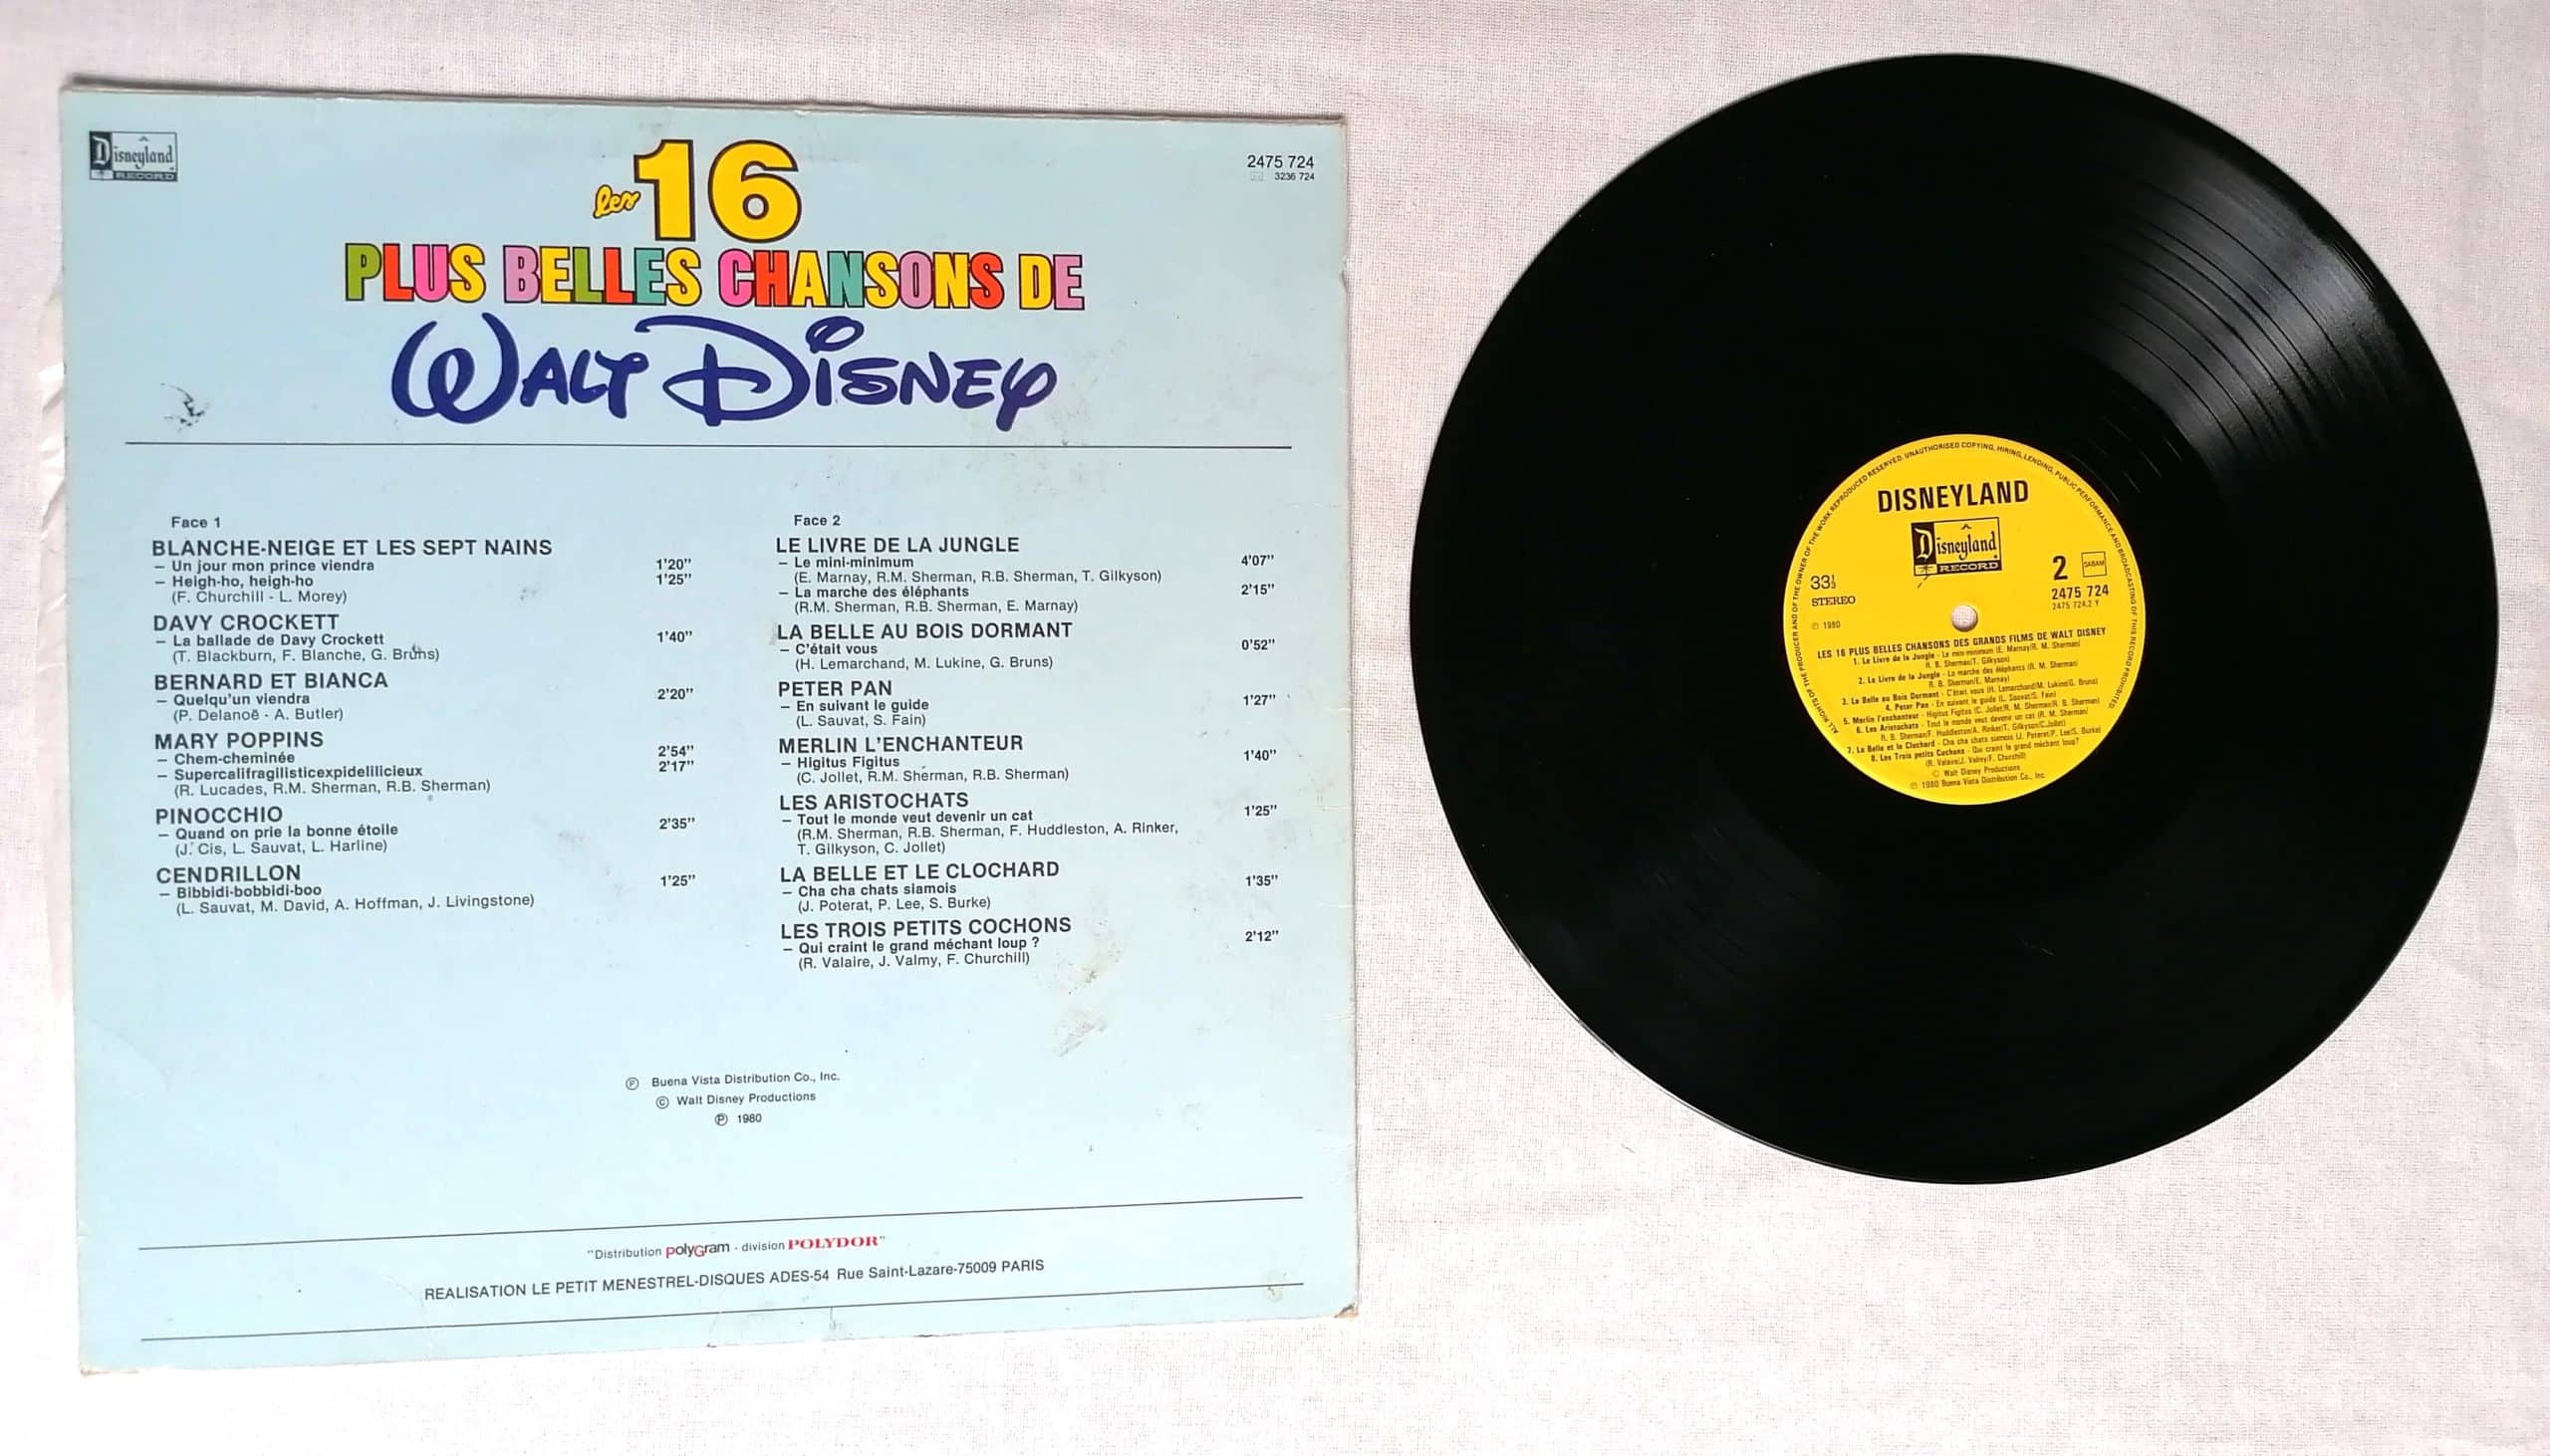 Disney Les plus belles chansons - Collectif - Vinyle album - Achat